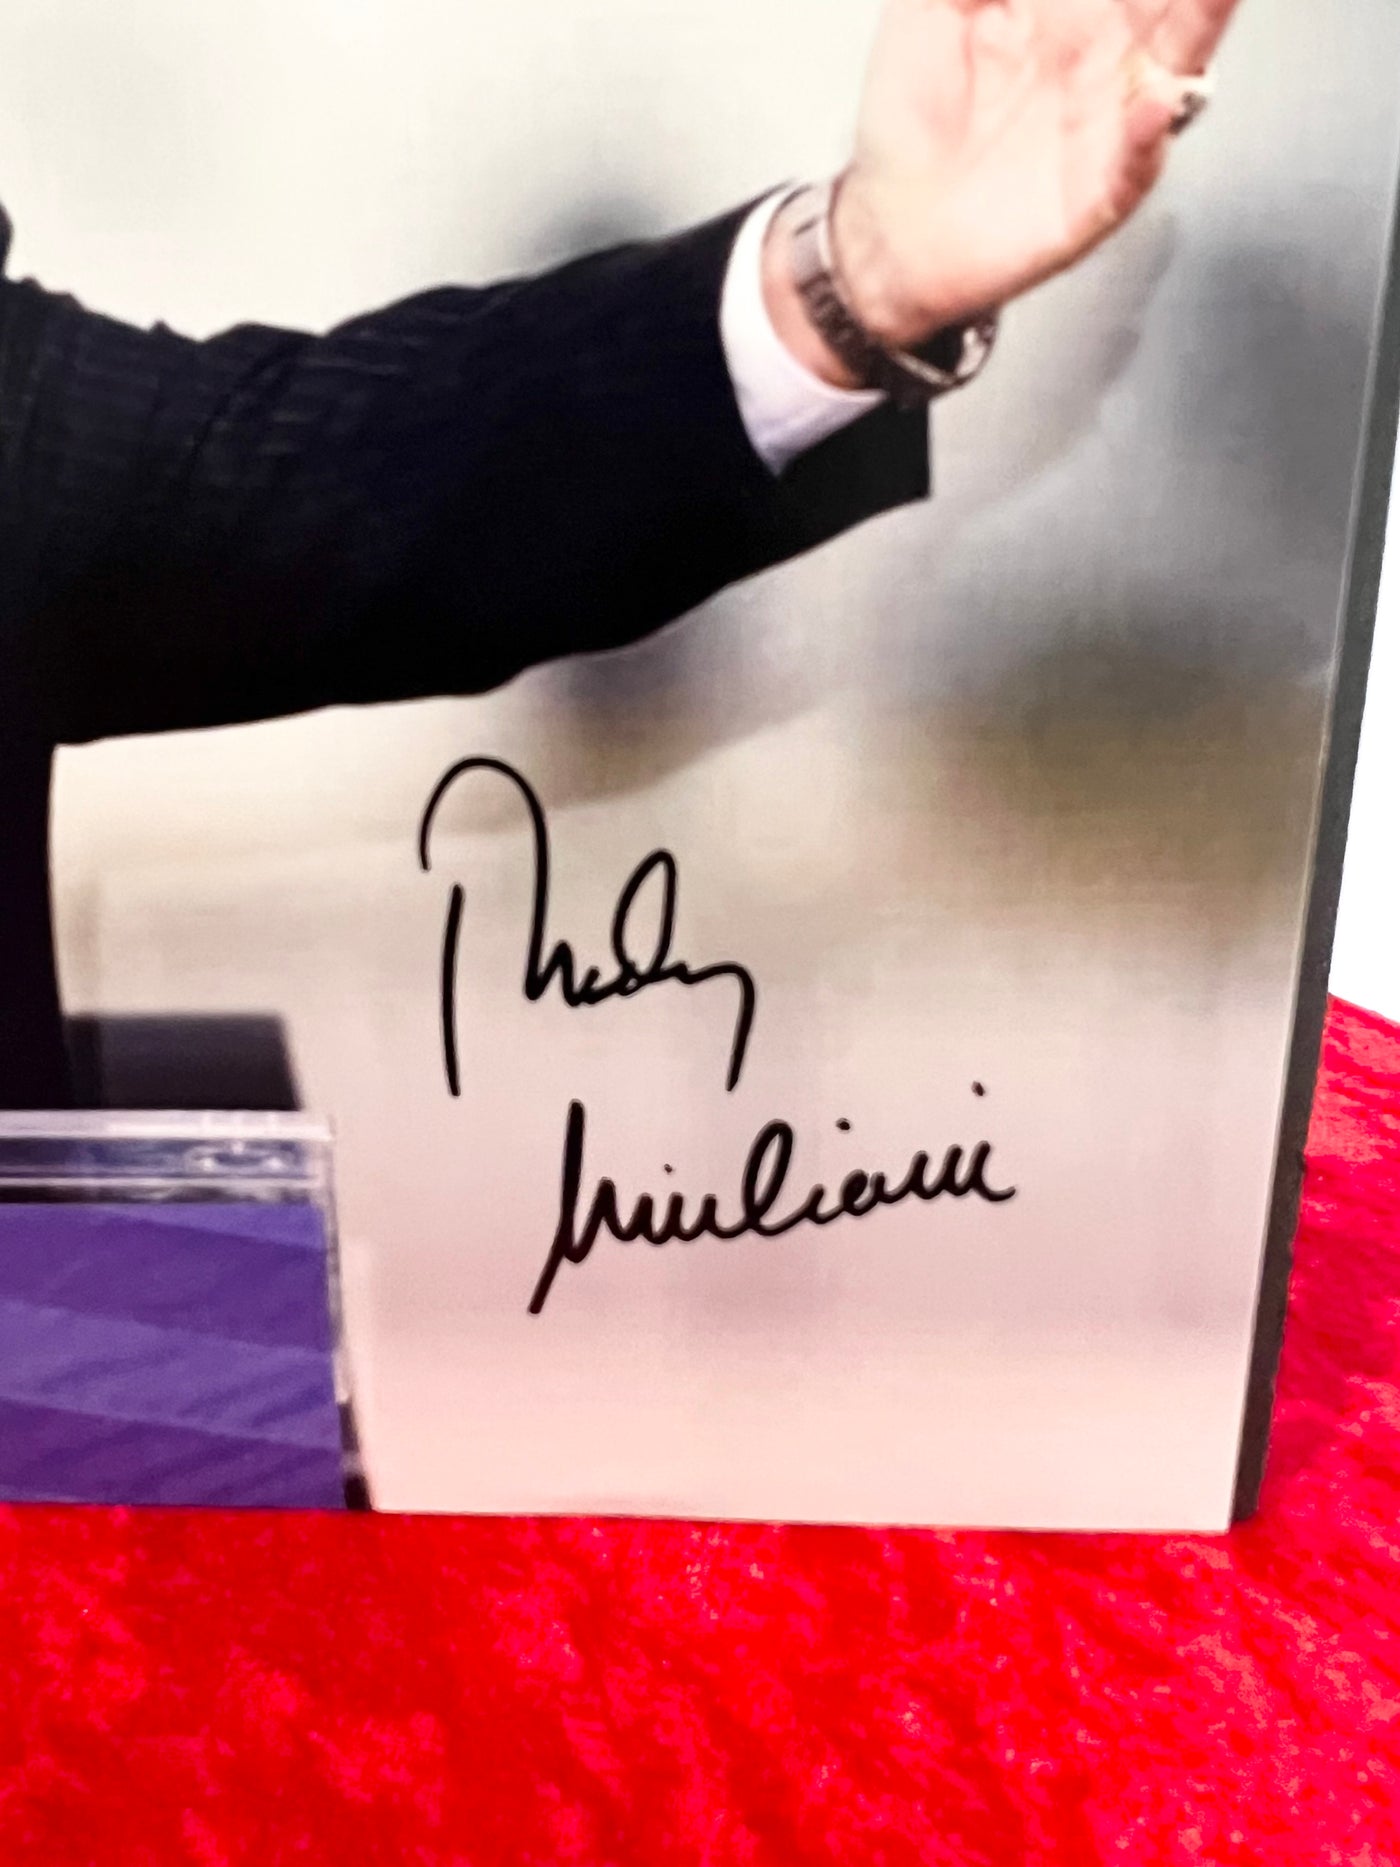 Rudy Giuliani Signed Photograph Rare COA